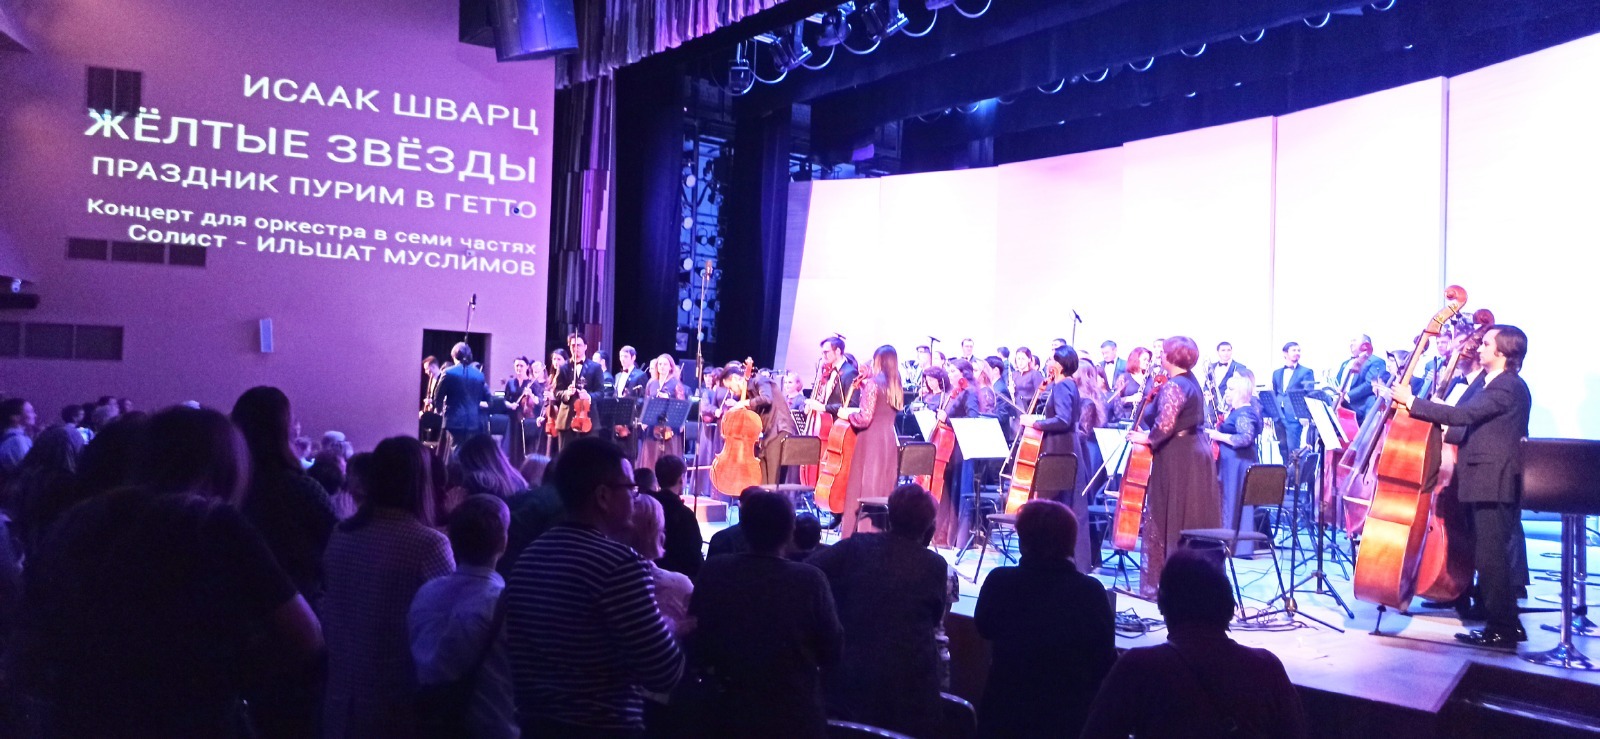 В Уфе прошел симфонический концерт к Международному дню памяти жертв Холокоста